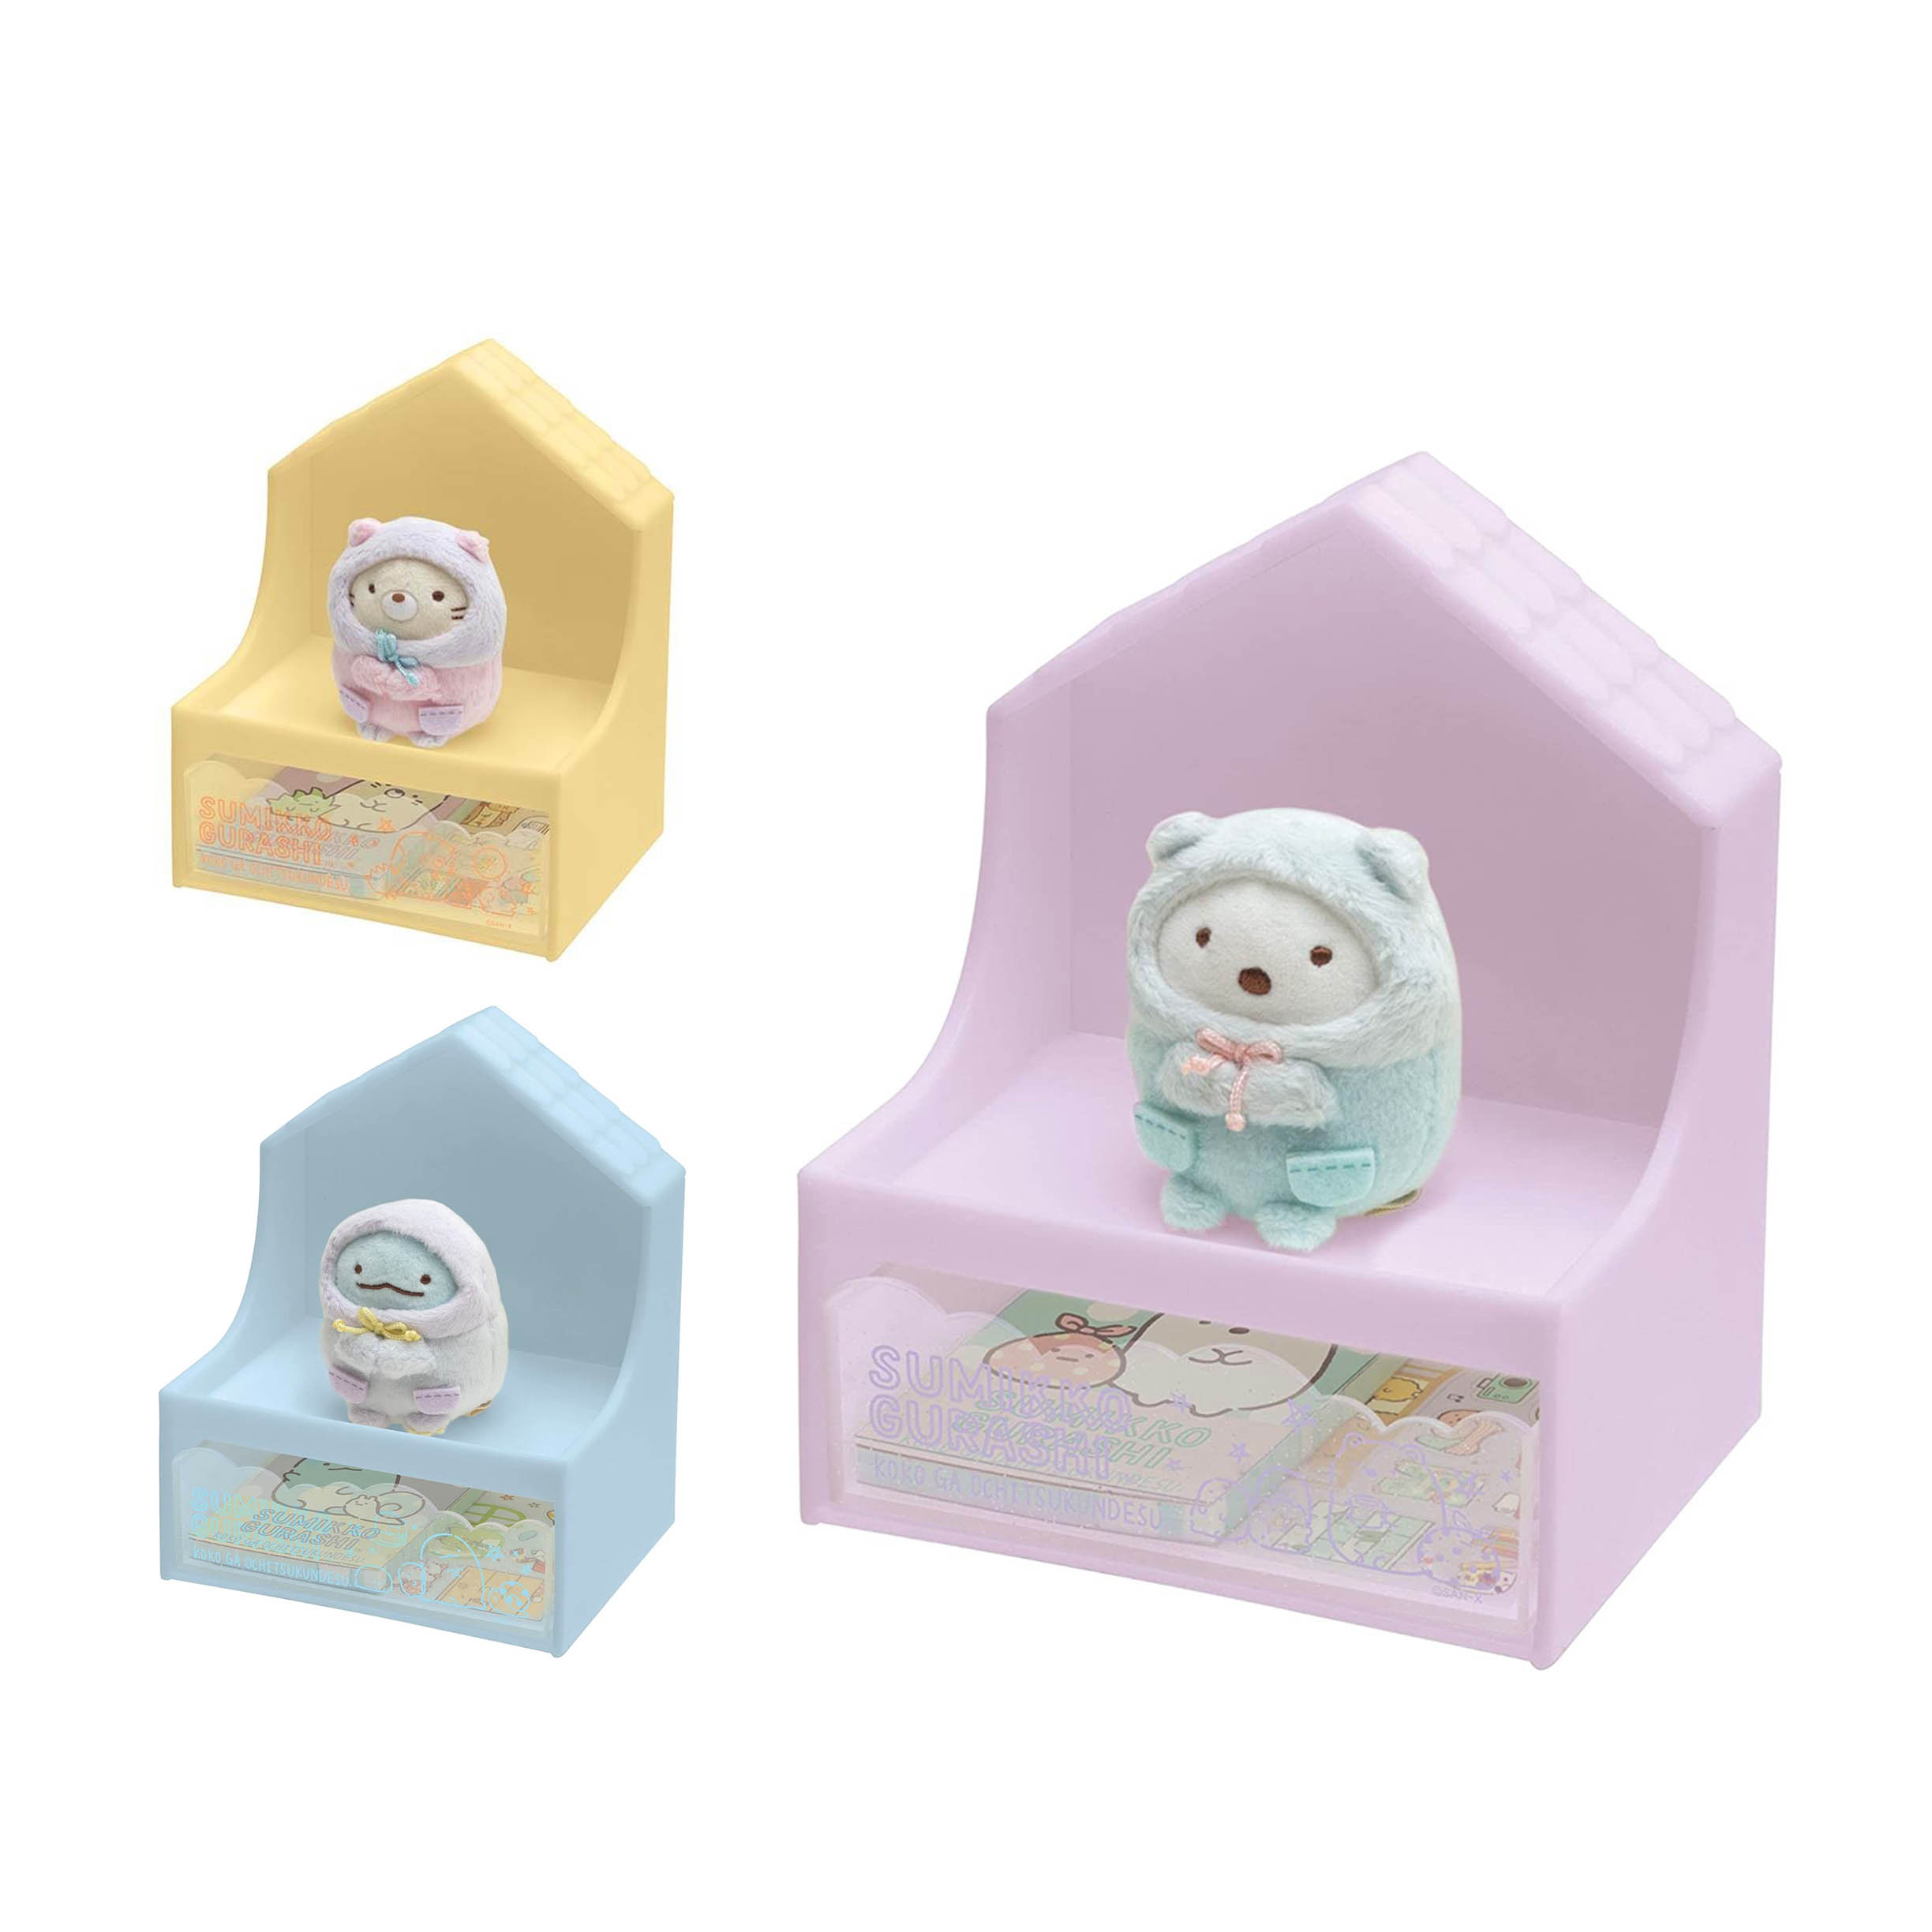 造型置物盒組-附娃娃 便條本 貼紙 角落生物 sumikko gurashi san-x 日本進口正版授權